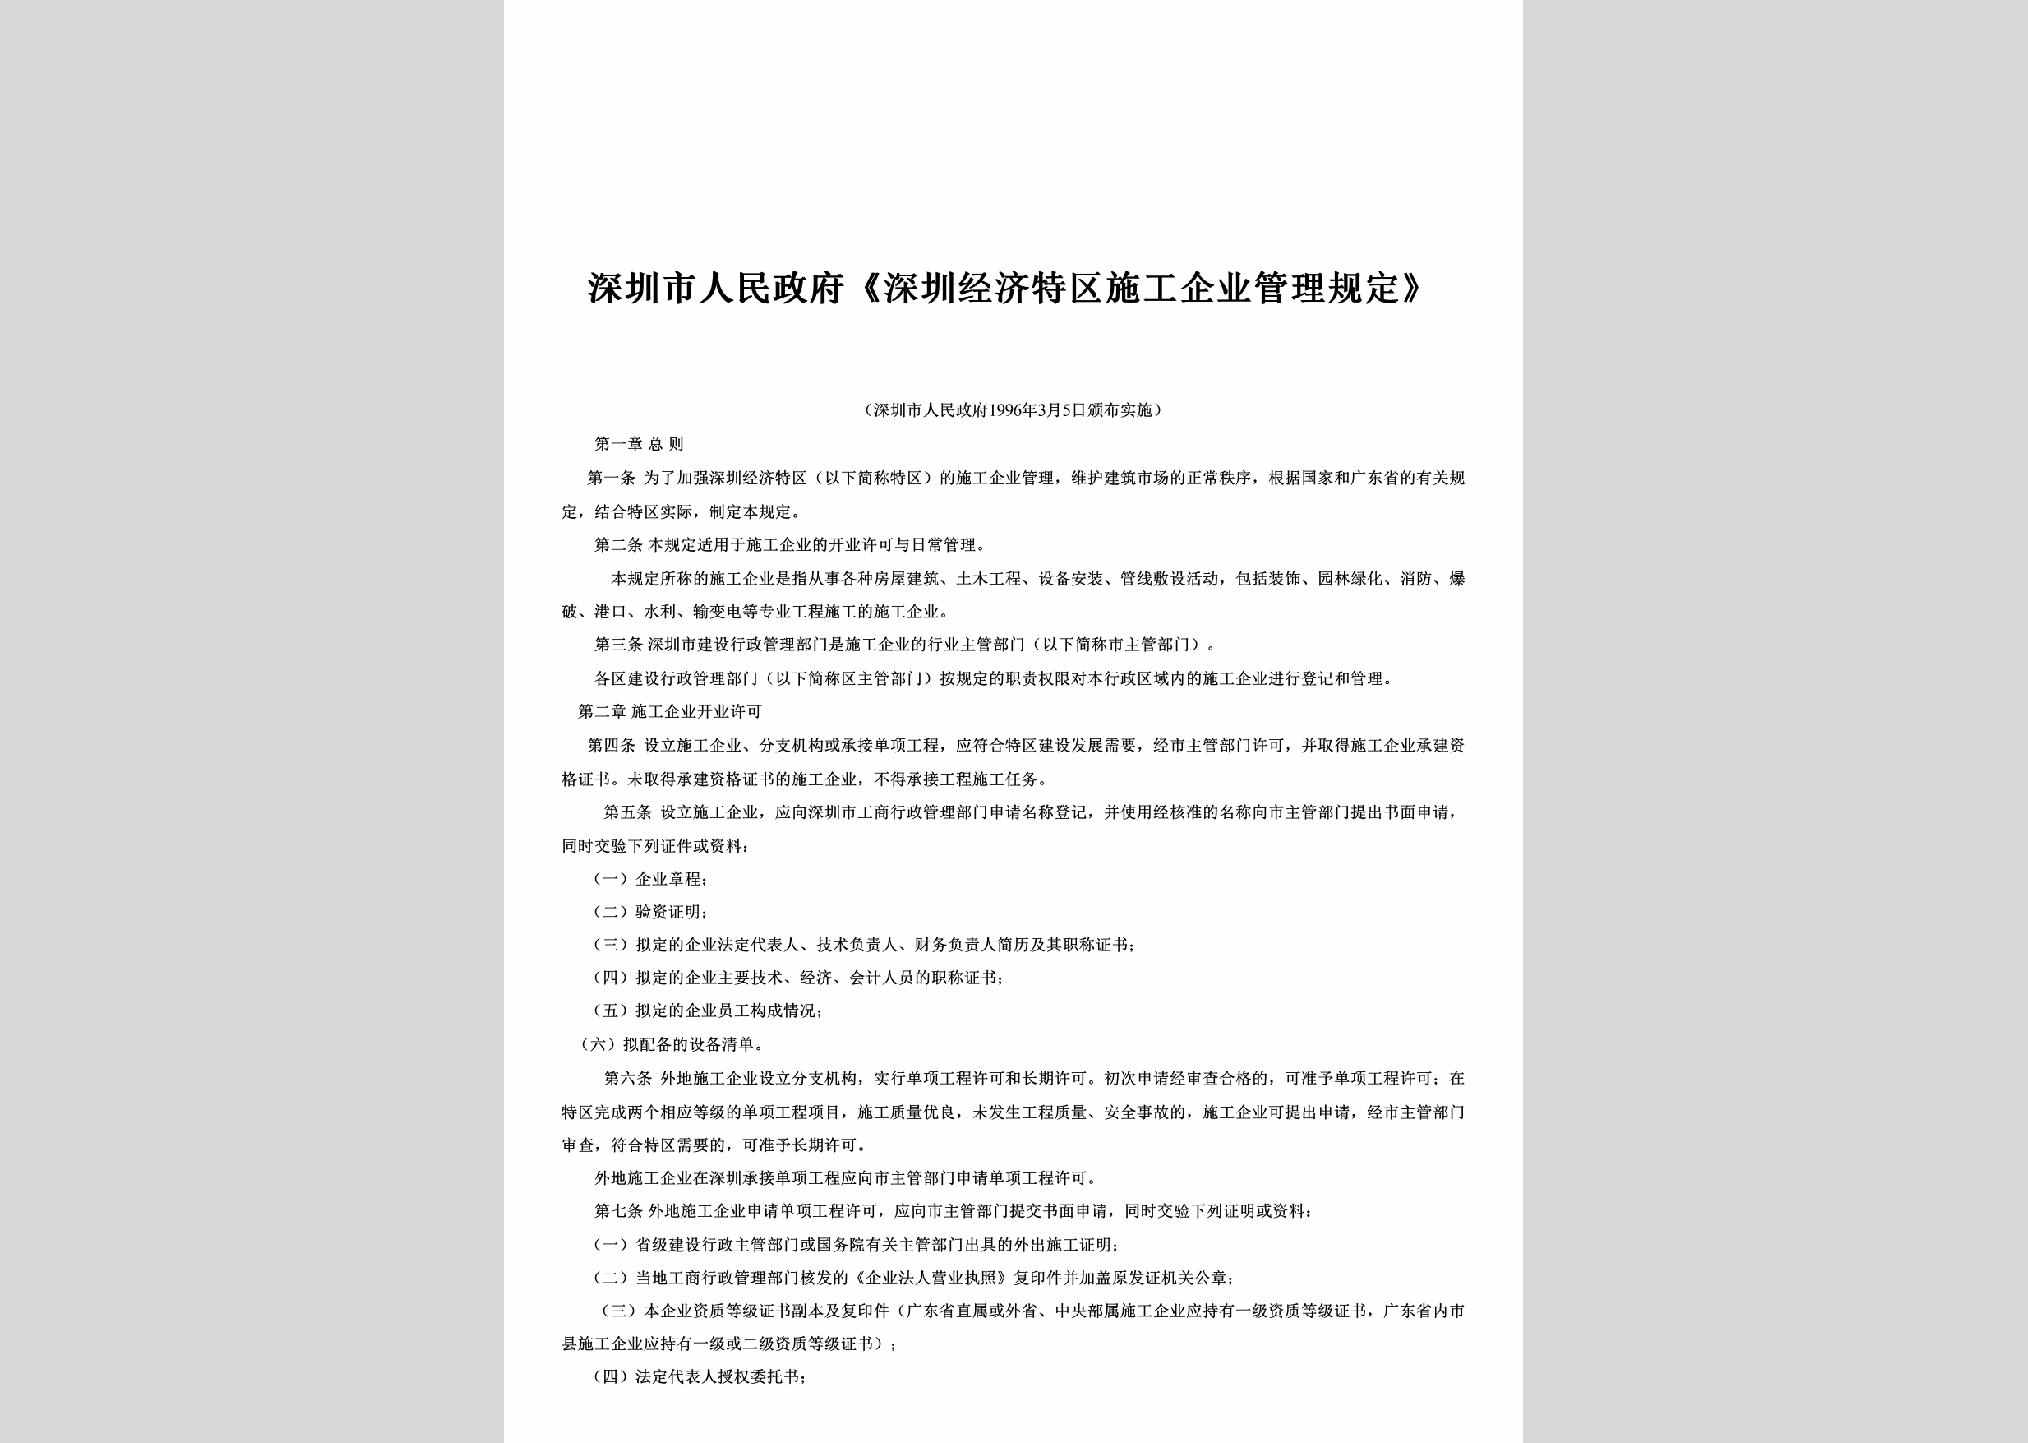 GD-SGQYGLGD-1996：《深圳经济特区施工企业管理规定》